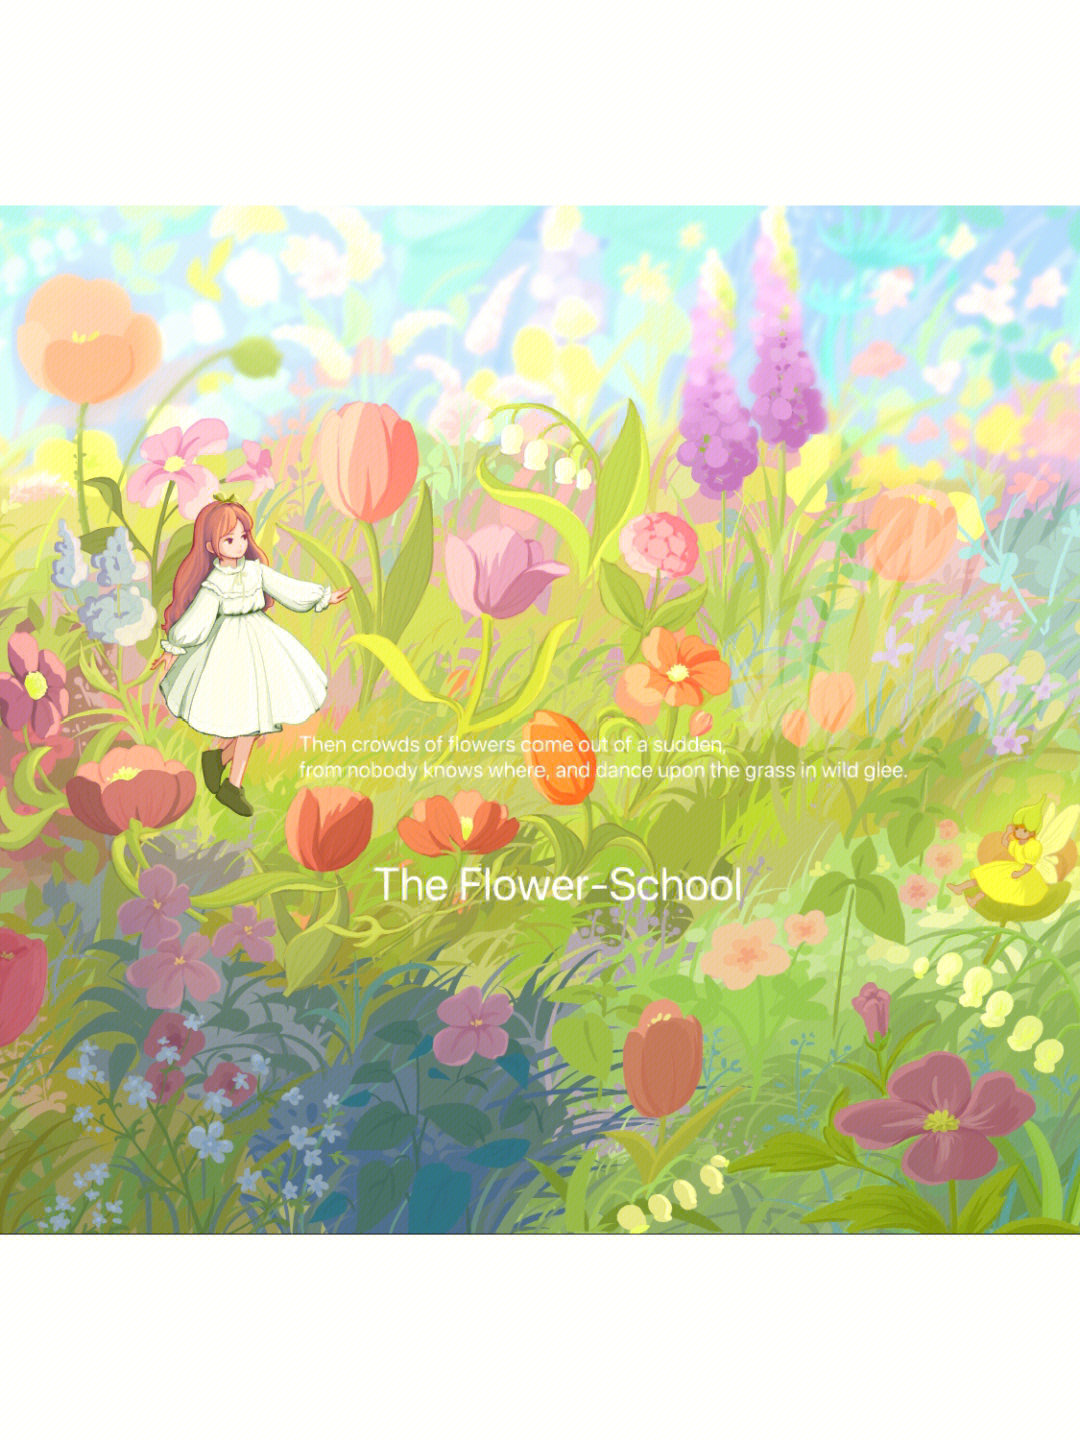 《花的学校》是我非常喜欢的泰戈尔的诗歌,充满了美好,爱和温情